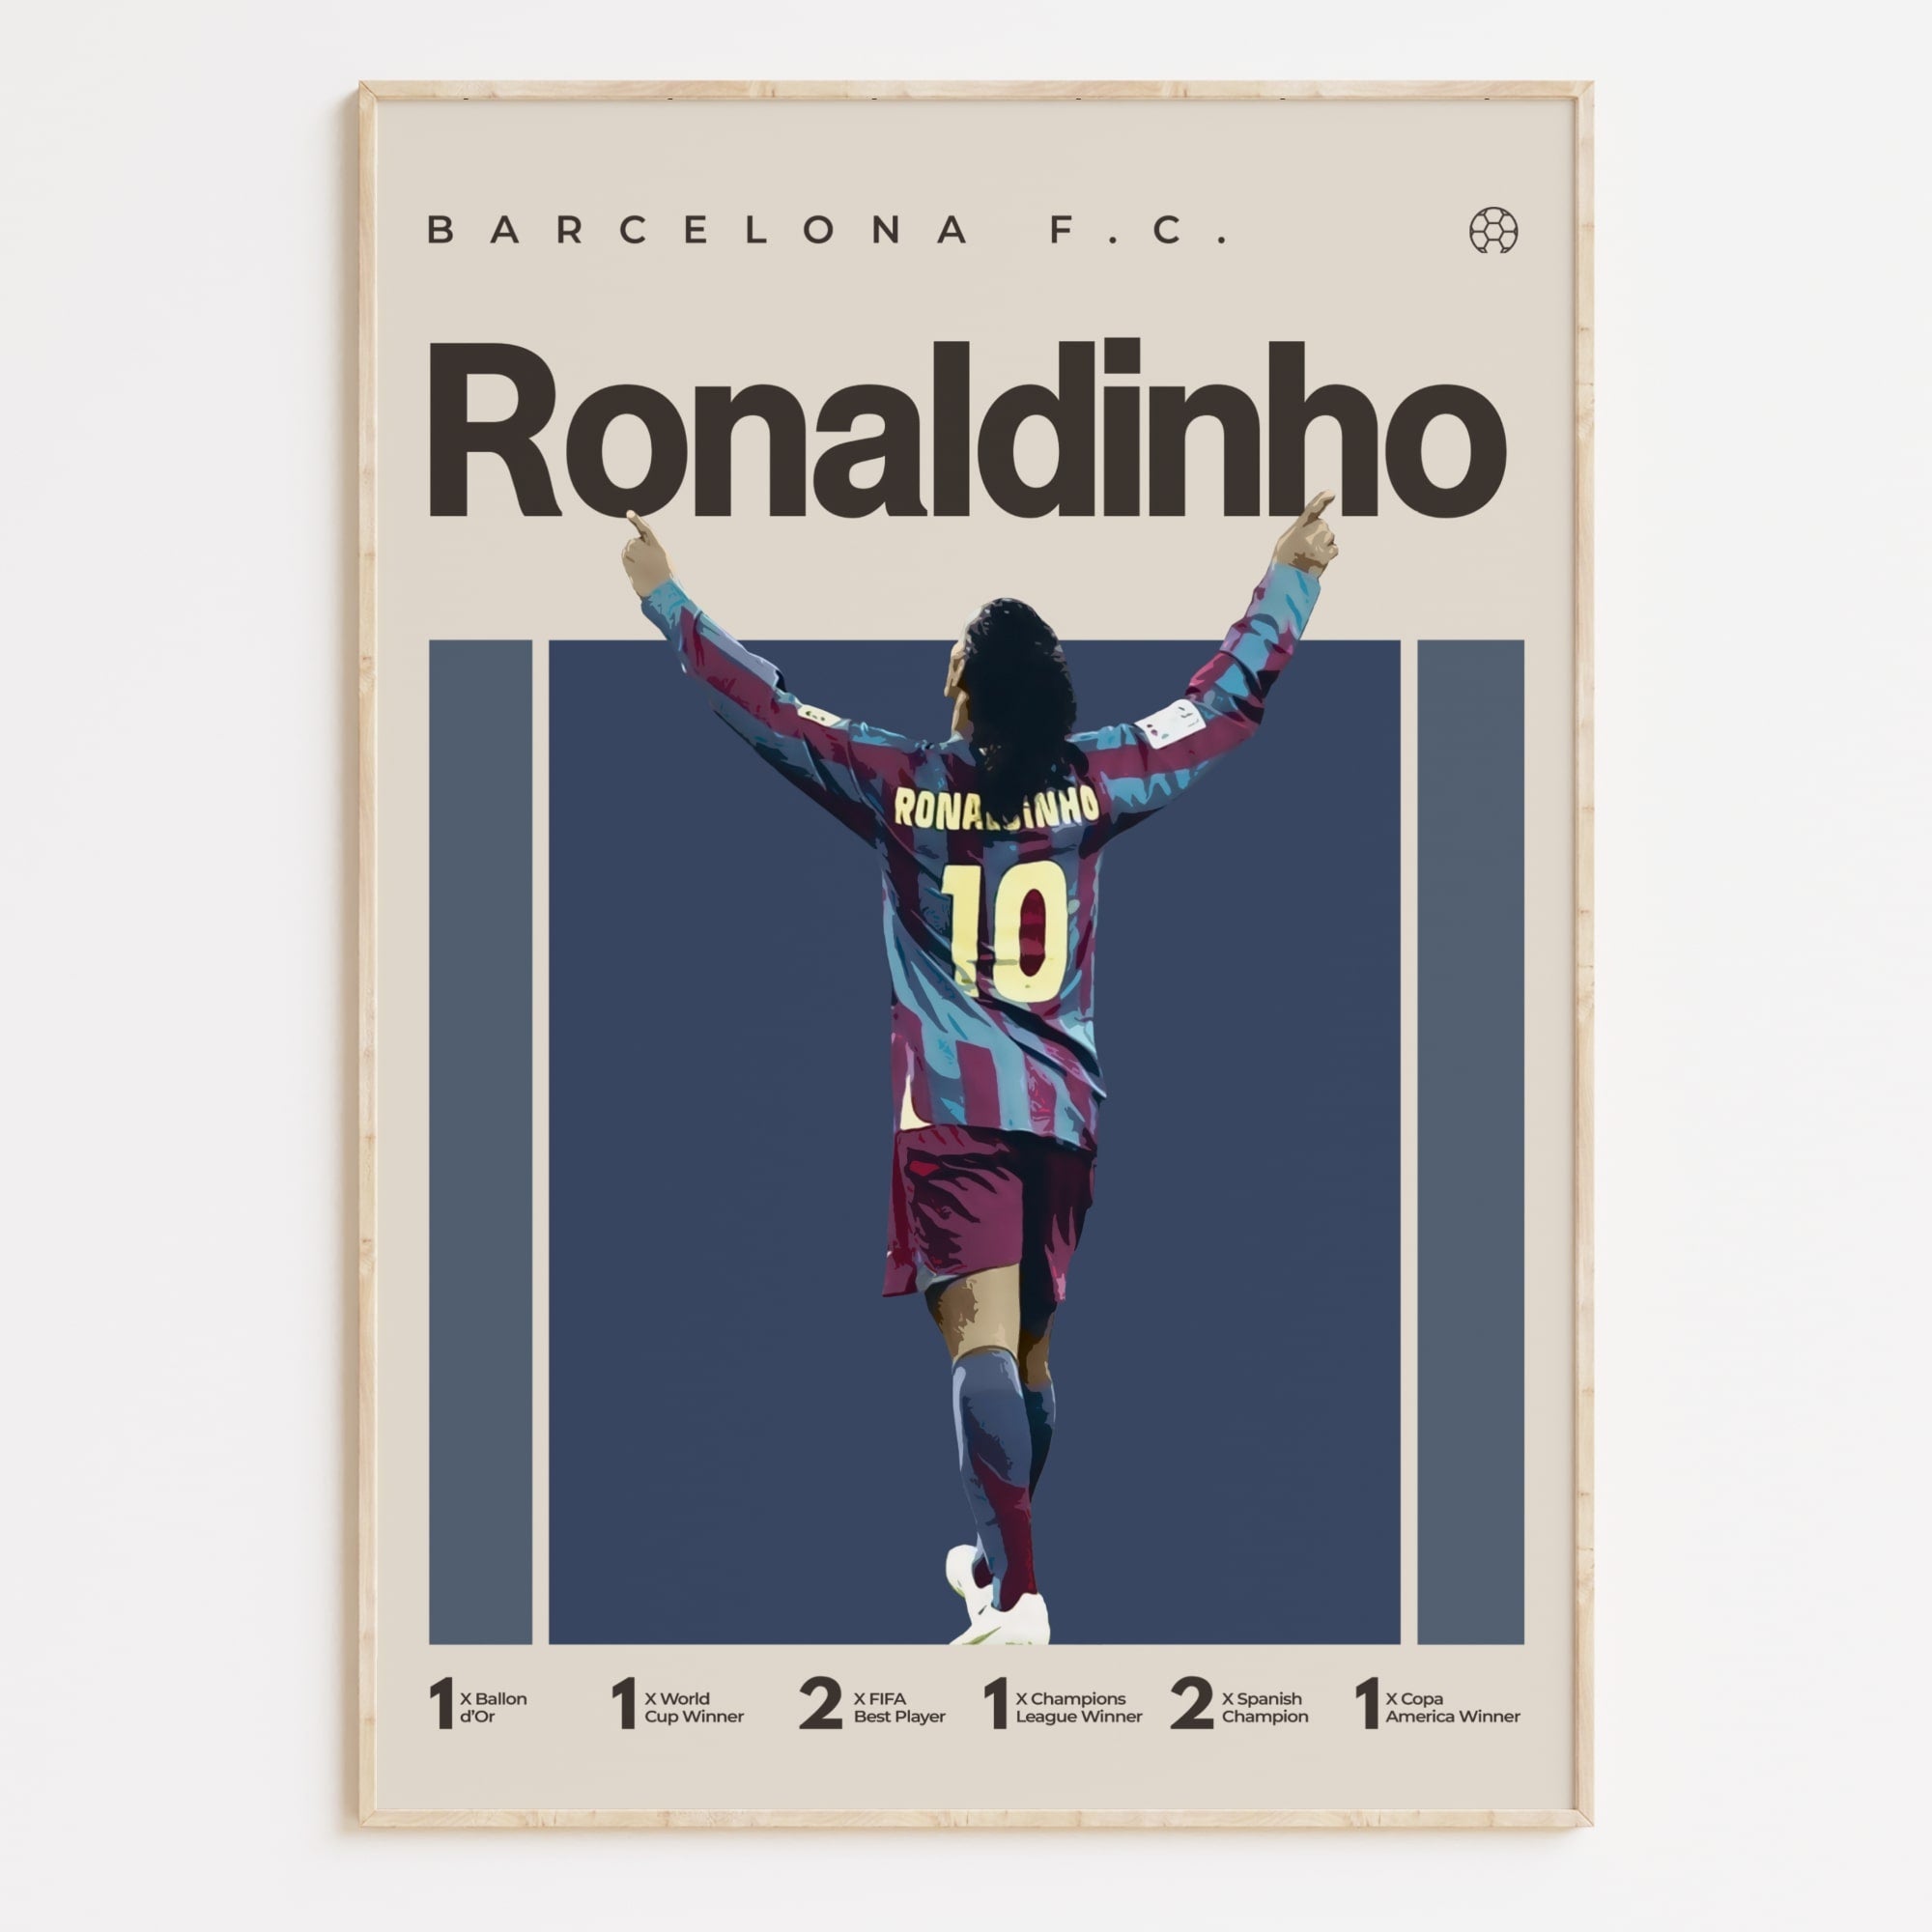 Ronaldinho Poster, Barecelona FC